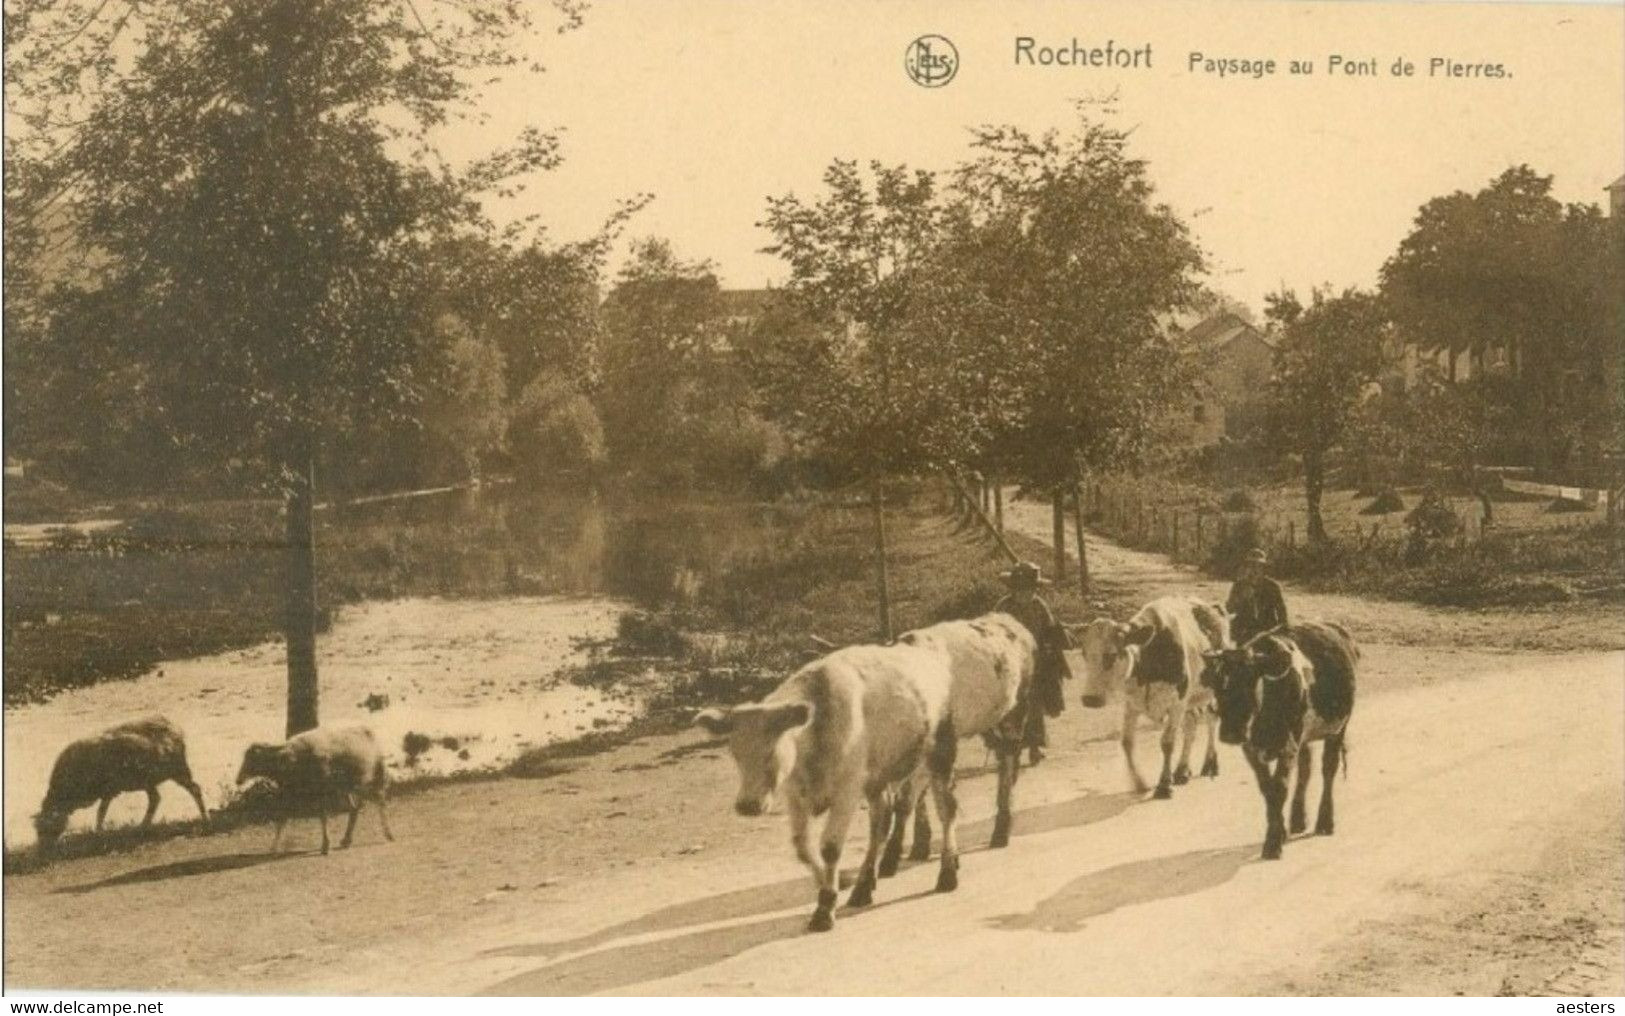 Rochefort; Paysage Au Pont De Pierres - Non Voyagé. (Thill - Bruxelles) - Rochefort